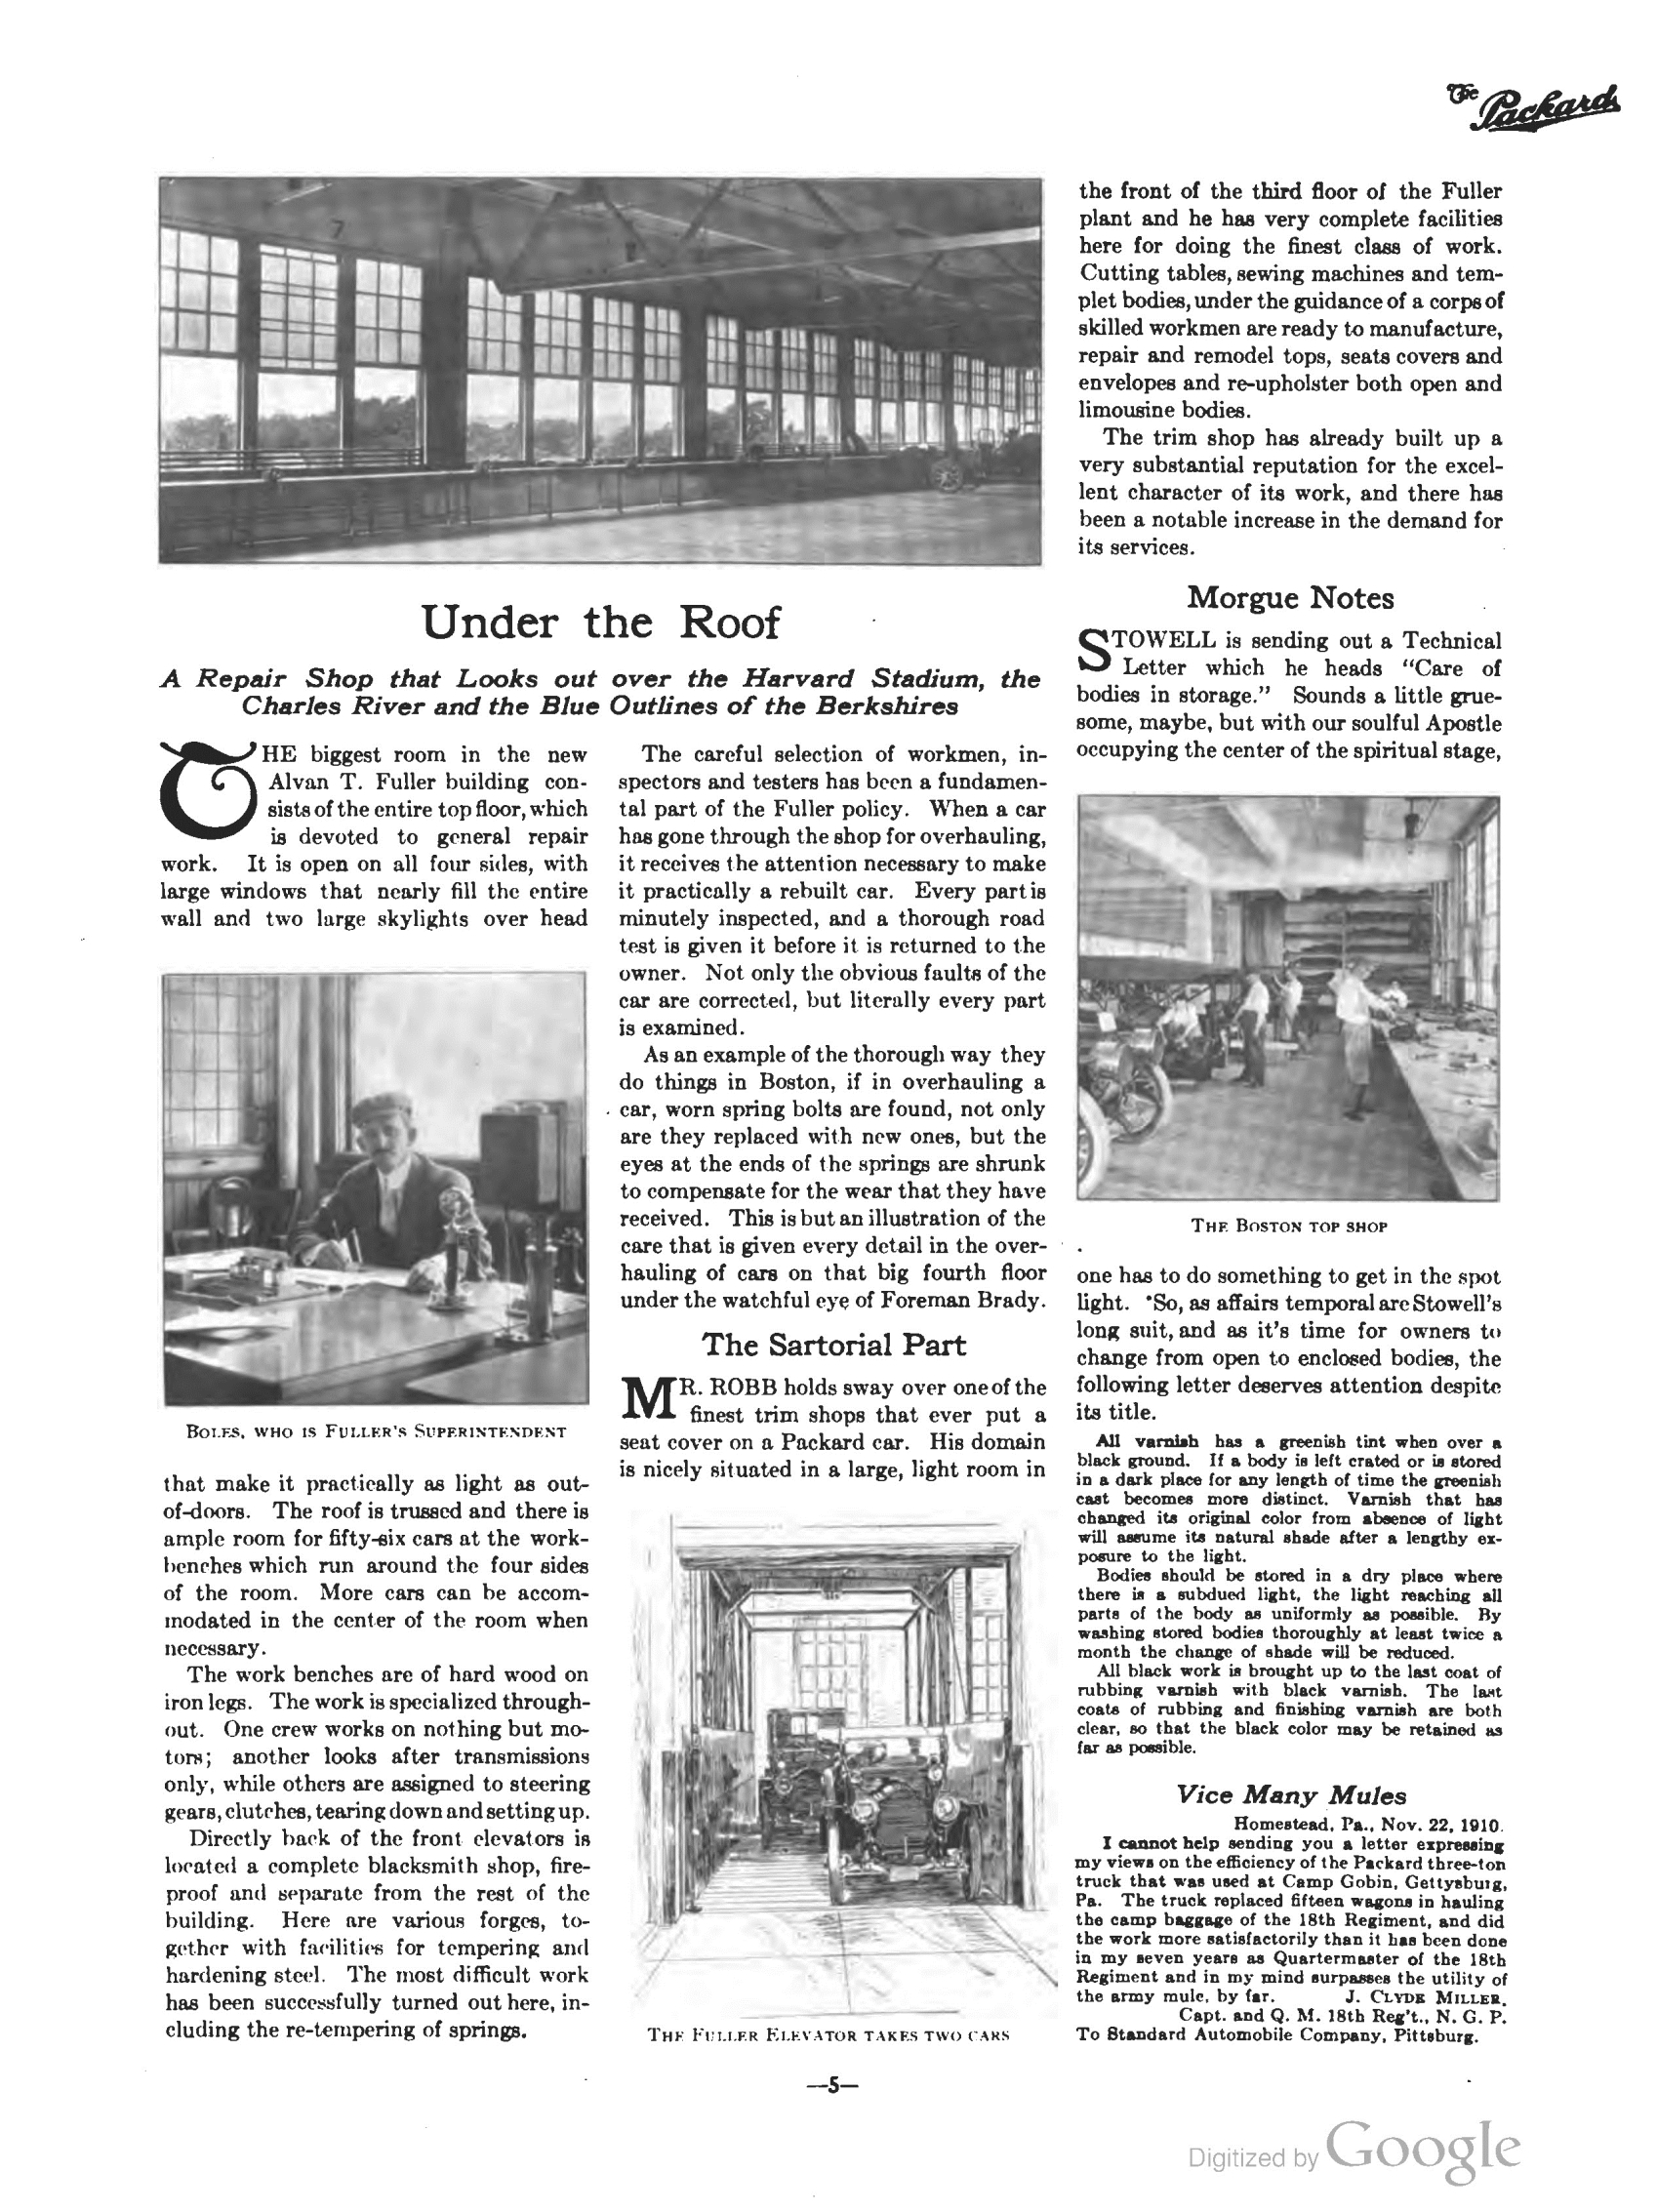 1910_The_Packard_Newsletter-231